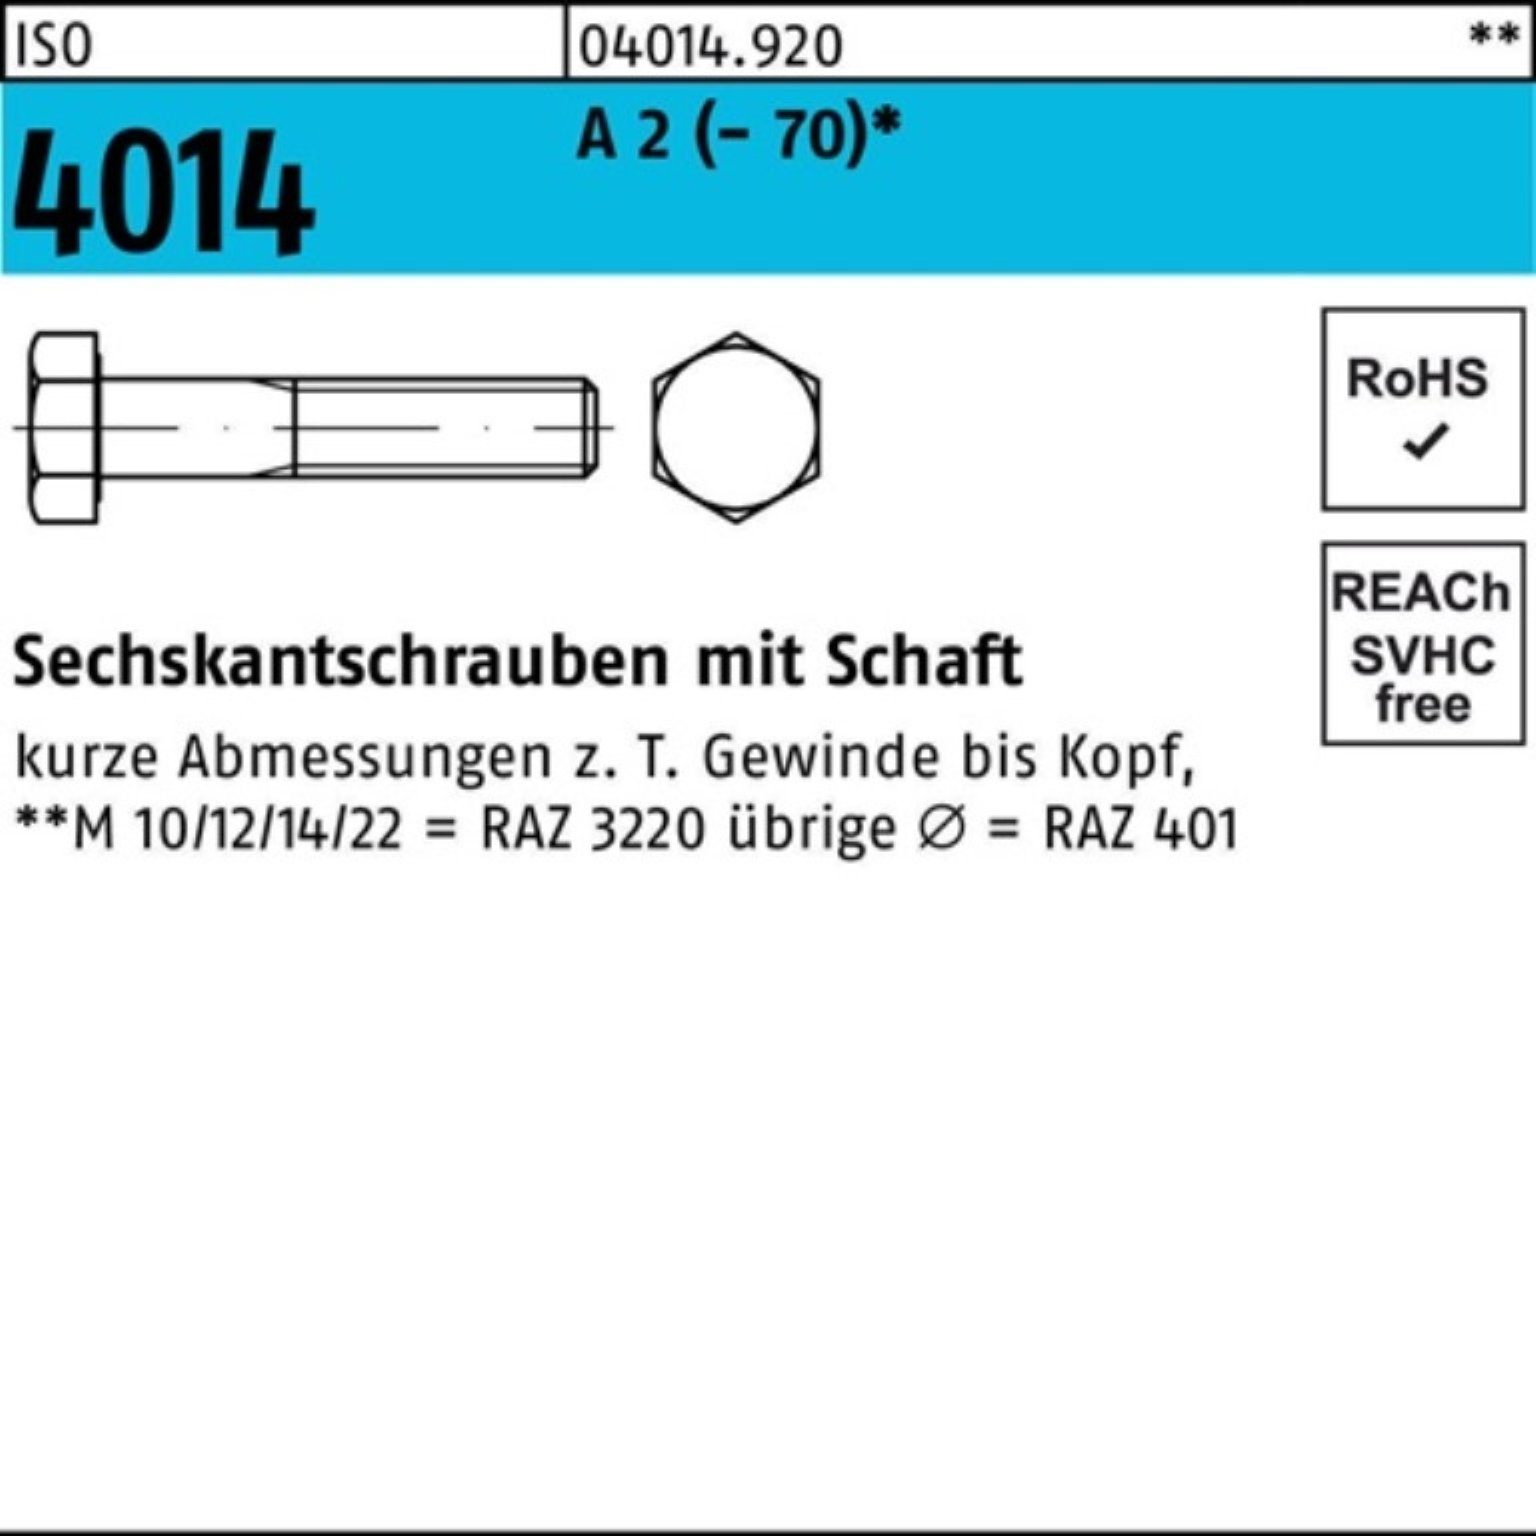 Pack Sechskantschraube 100er Bufab 4014 ISO Stück A M36x 2 110 Sechskantschraube ISO Schaft 1